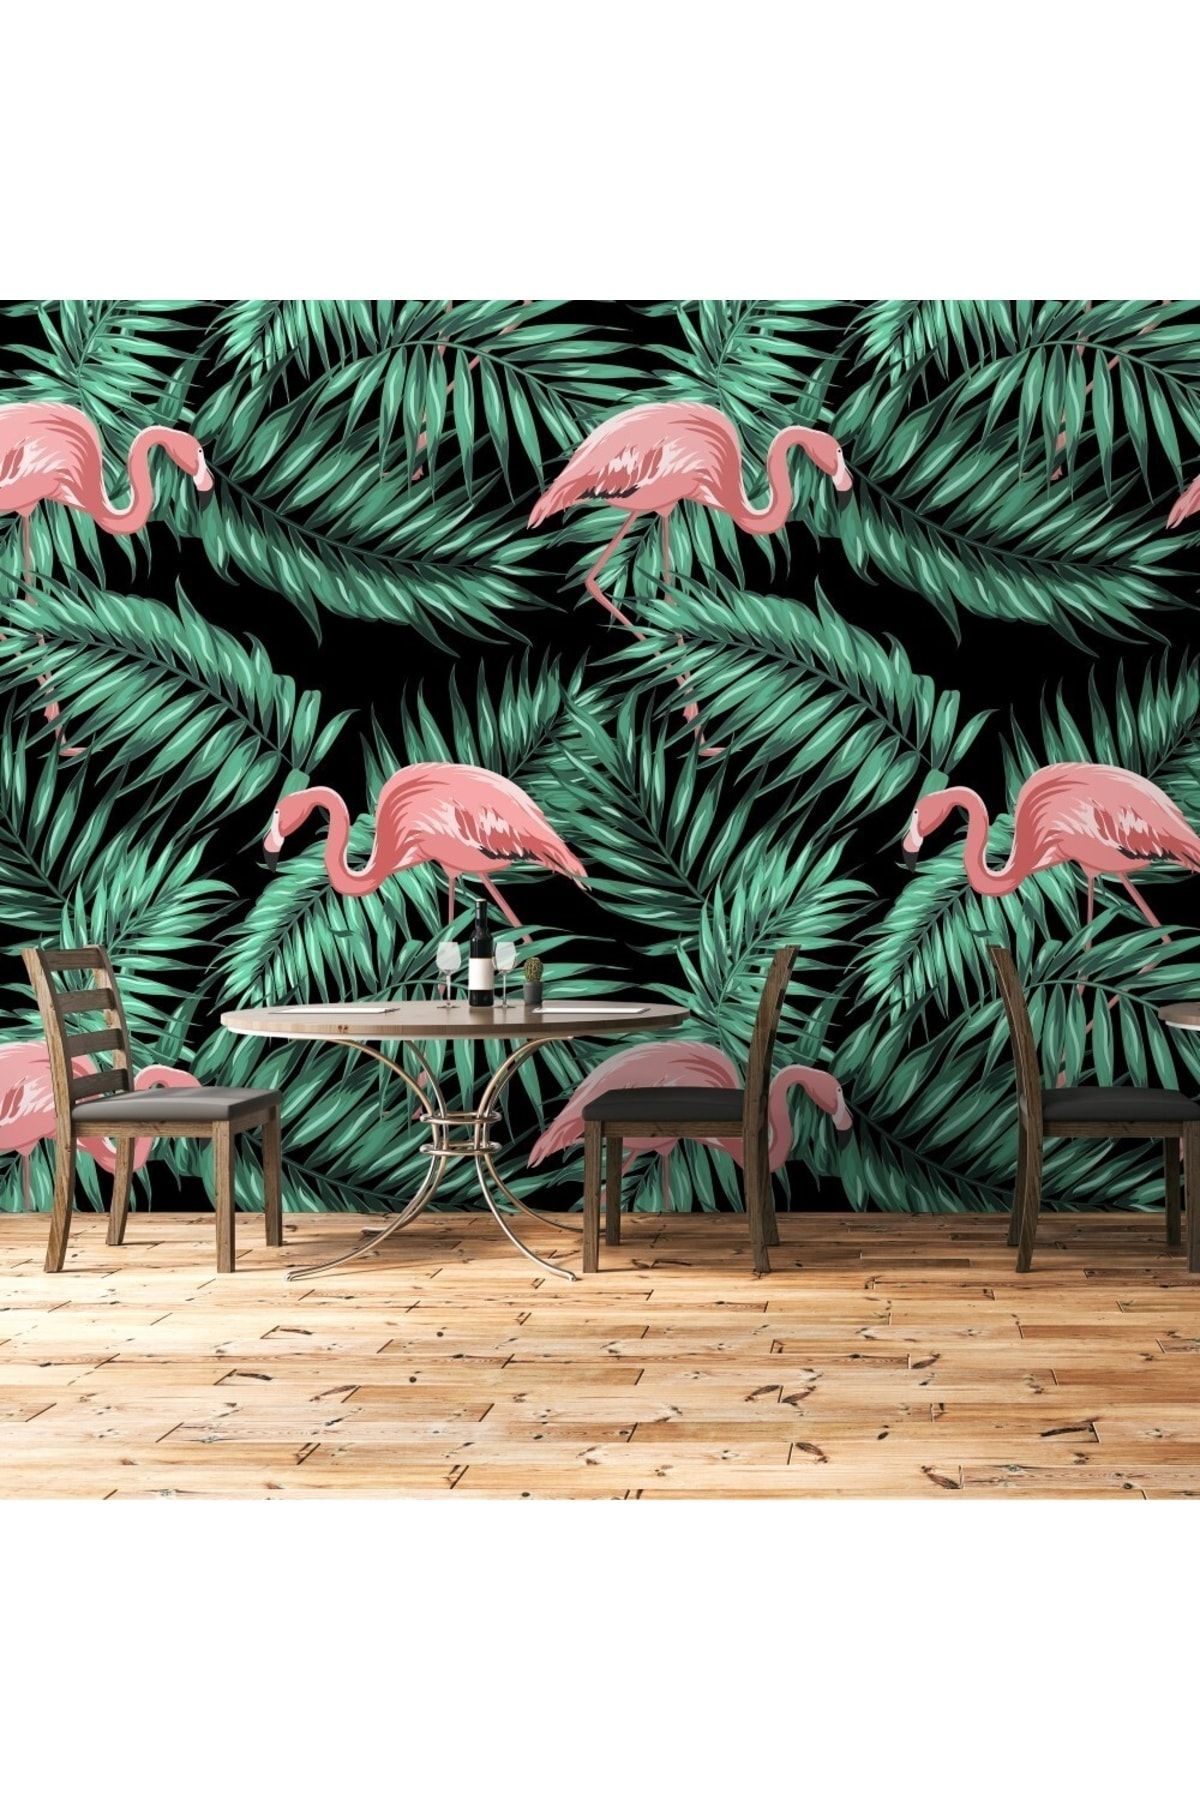 FX WallCoverings Yapraklar Arasında Flamingolar